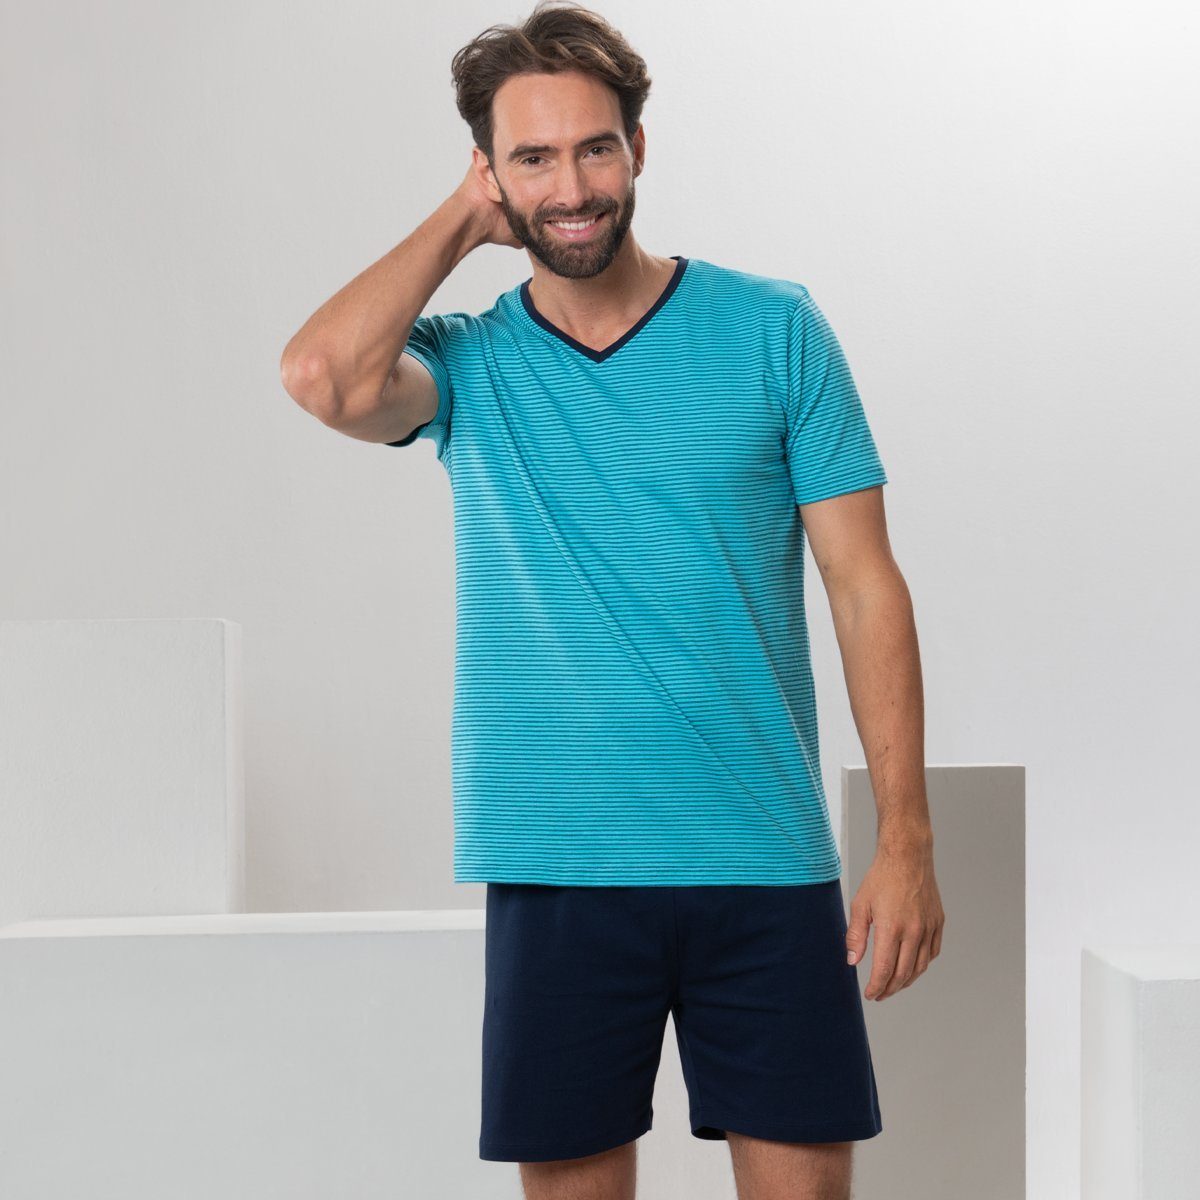 Sommerliche Turquoise Leichtigkeit CARL LIVING Schlafanzug abgestimmten Farbtönen in CRAFTS